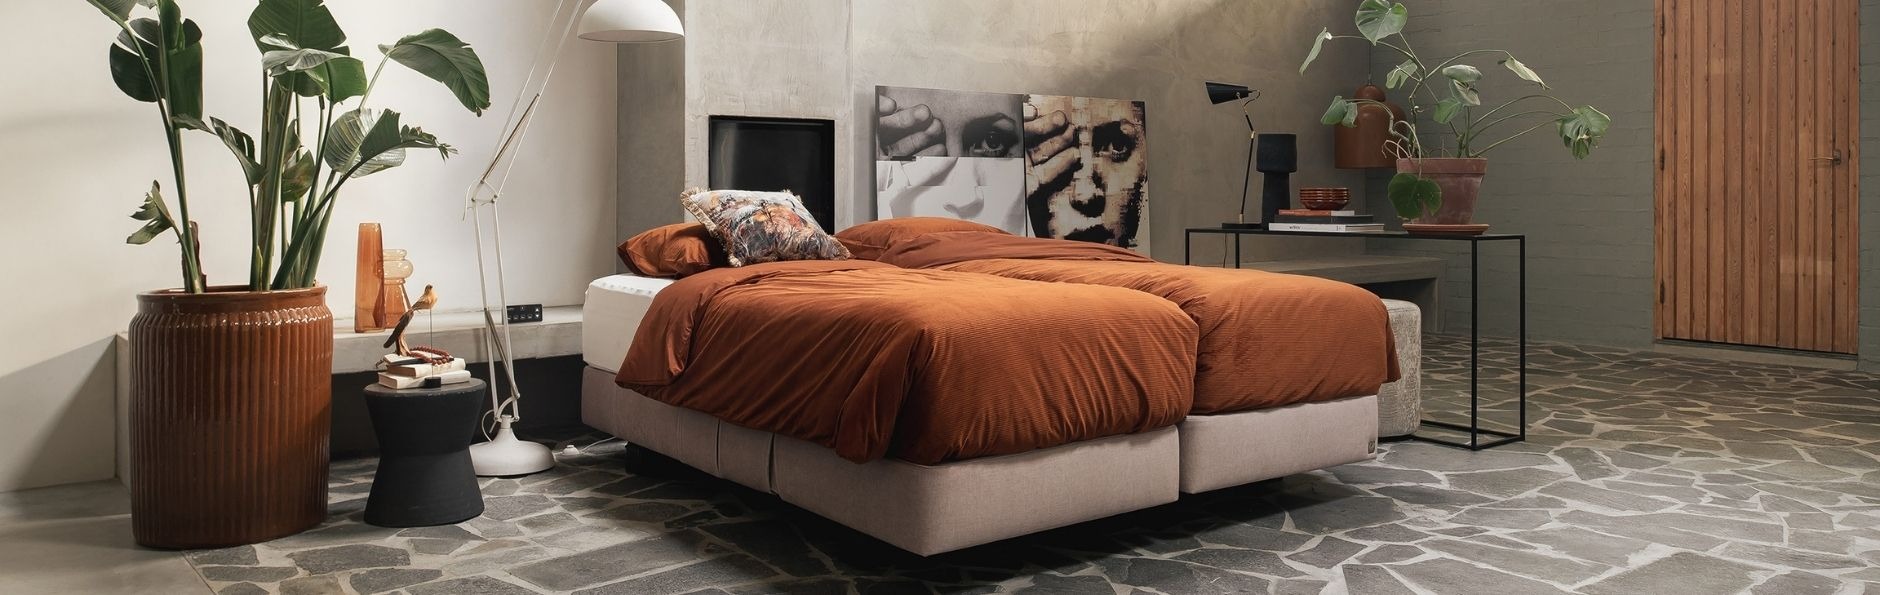 Een Well-Fair bed in terracotta uitvoering in mooi ingerichte ruimte.